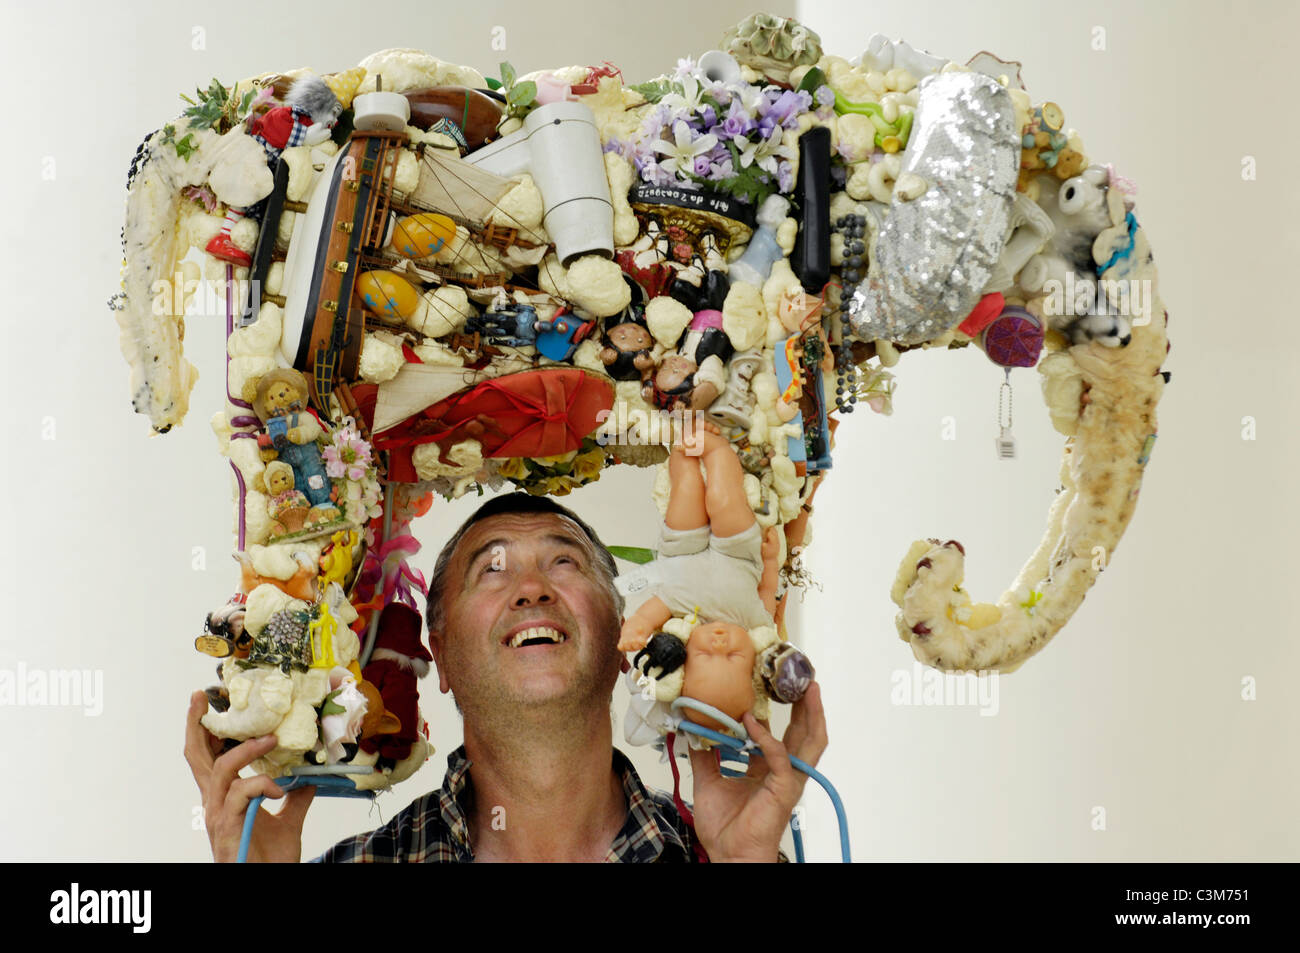 Bildhauer Anthony Heywood hebt seine Skulptur "Erde Elephant" aus recycelten Objekte gemacht. Stockfoto